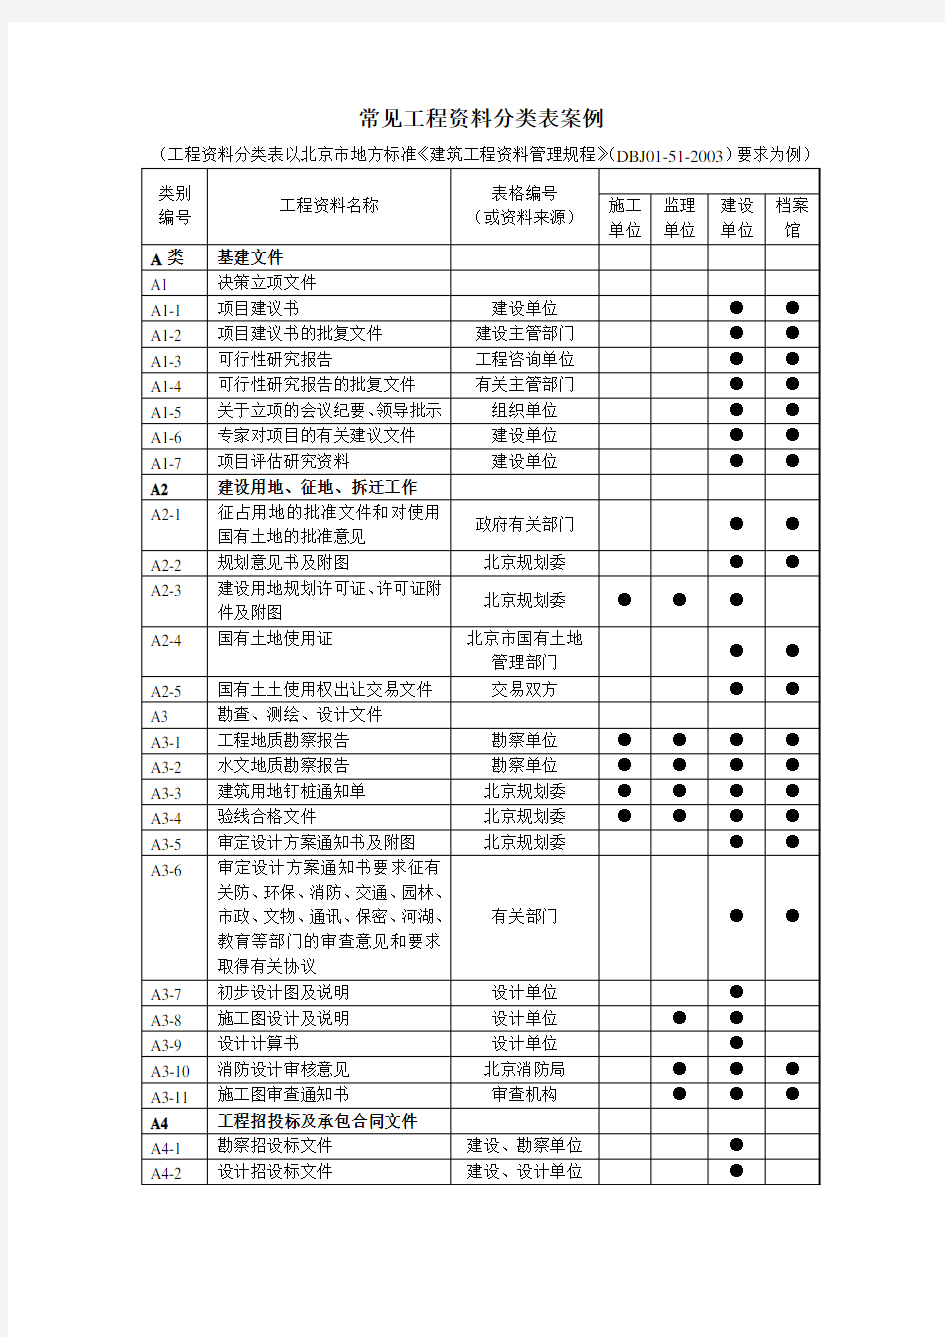 常见工程资料分类表案例(以北京为例)